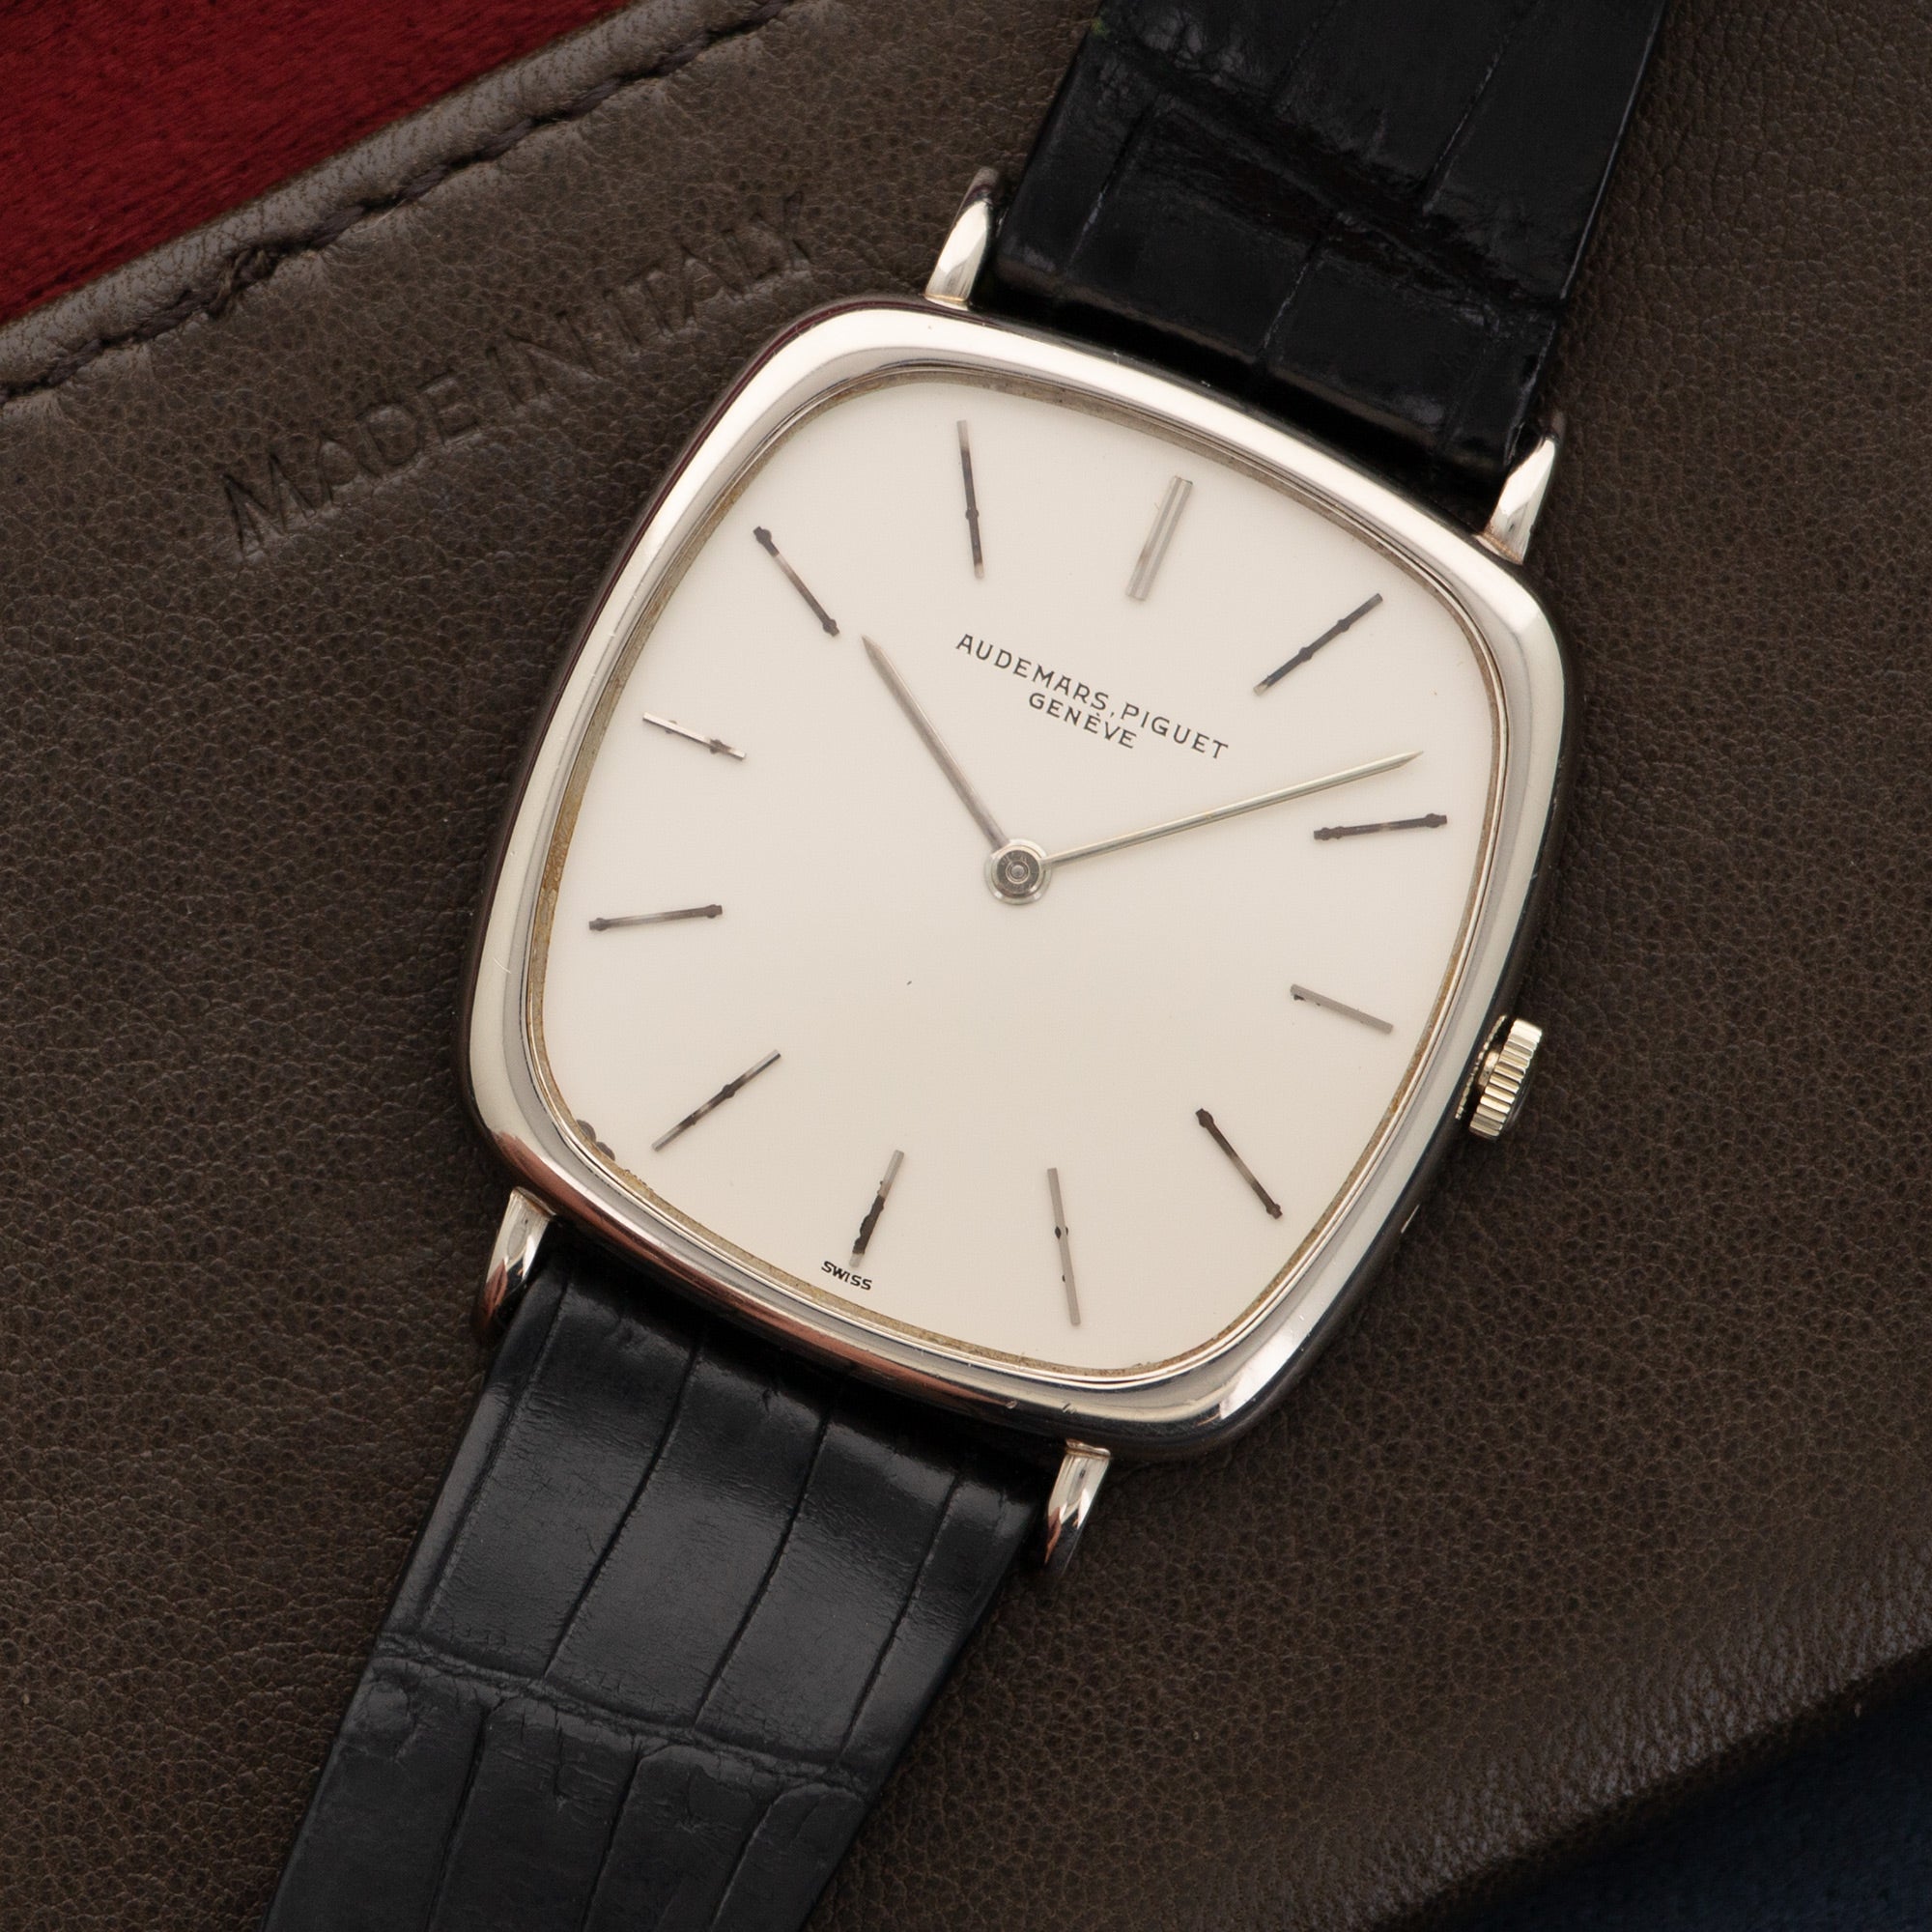 Audemars Piguet - Audemars Piguet White Gold Cushion-Shaped Watch - The Keystone Watches